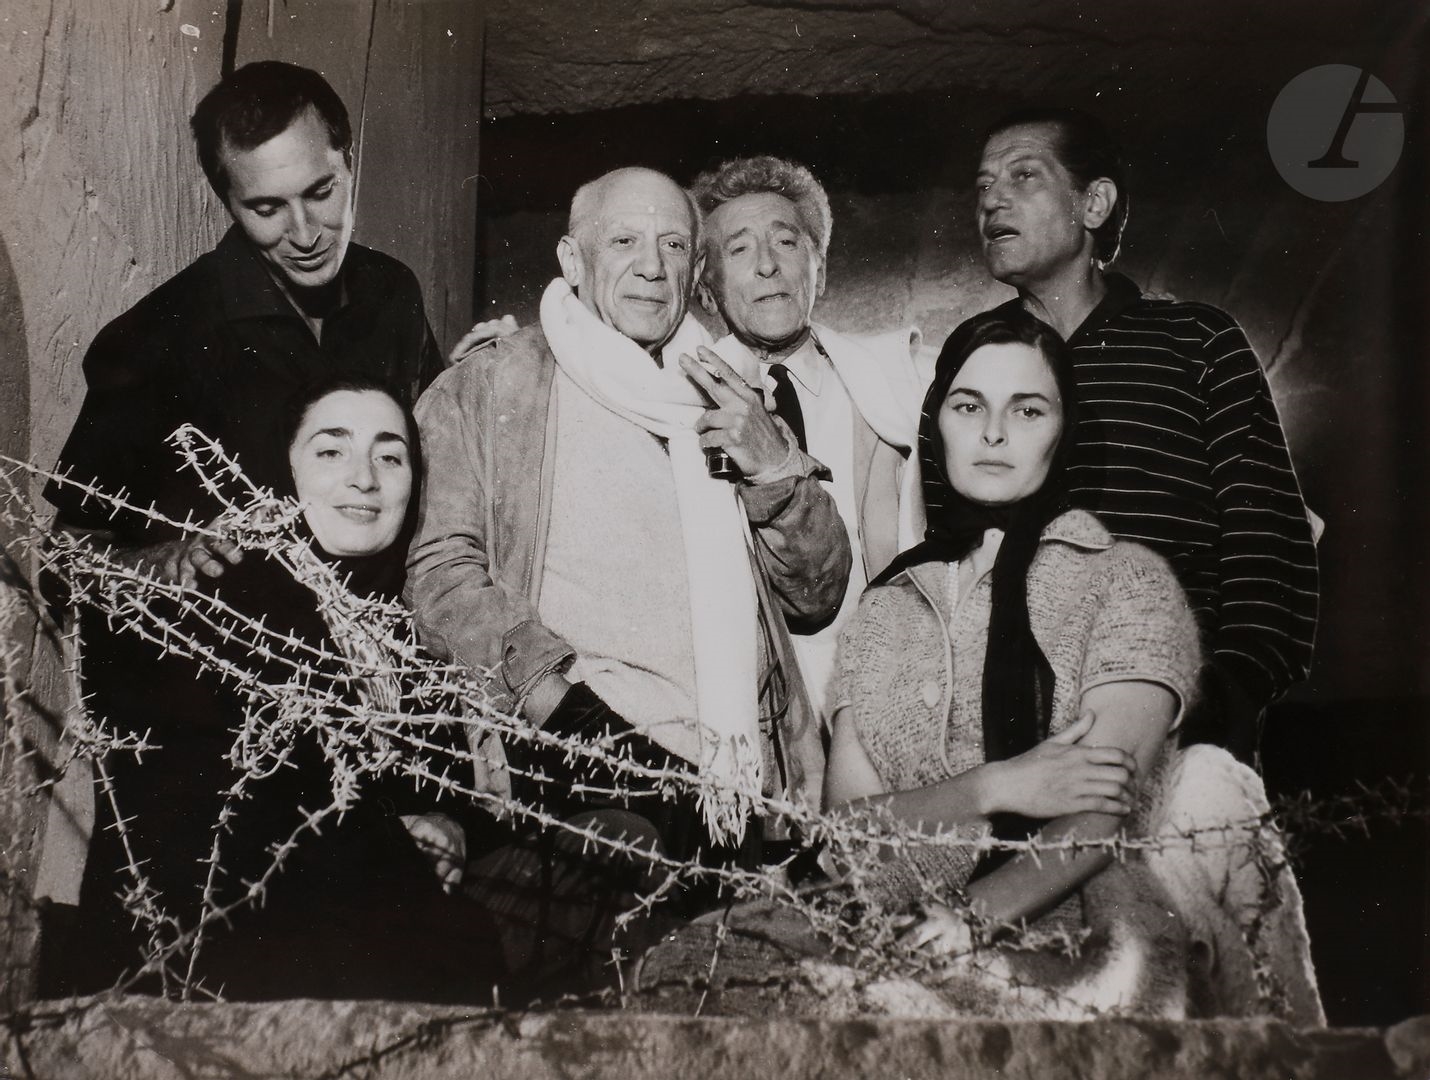 Pablo Picasso et Jean Cocteau entourés de Serge Lifar by Lucien Clergue, 1959